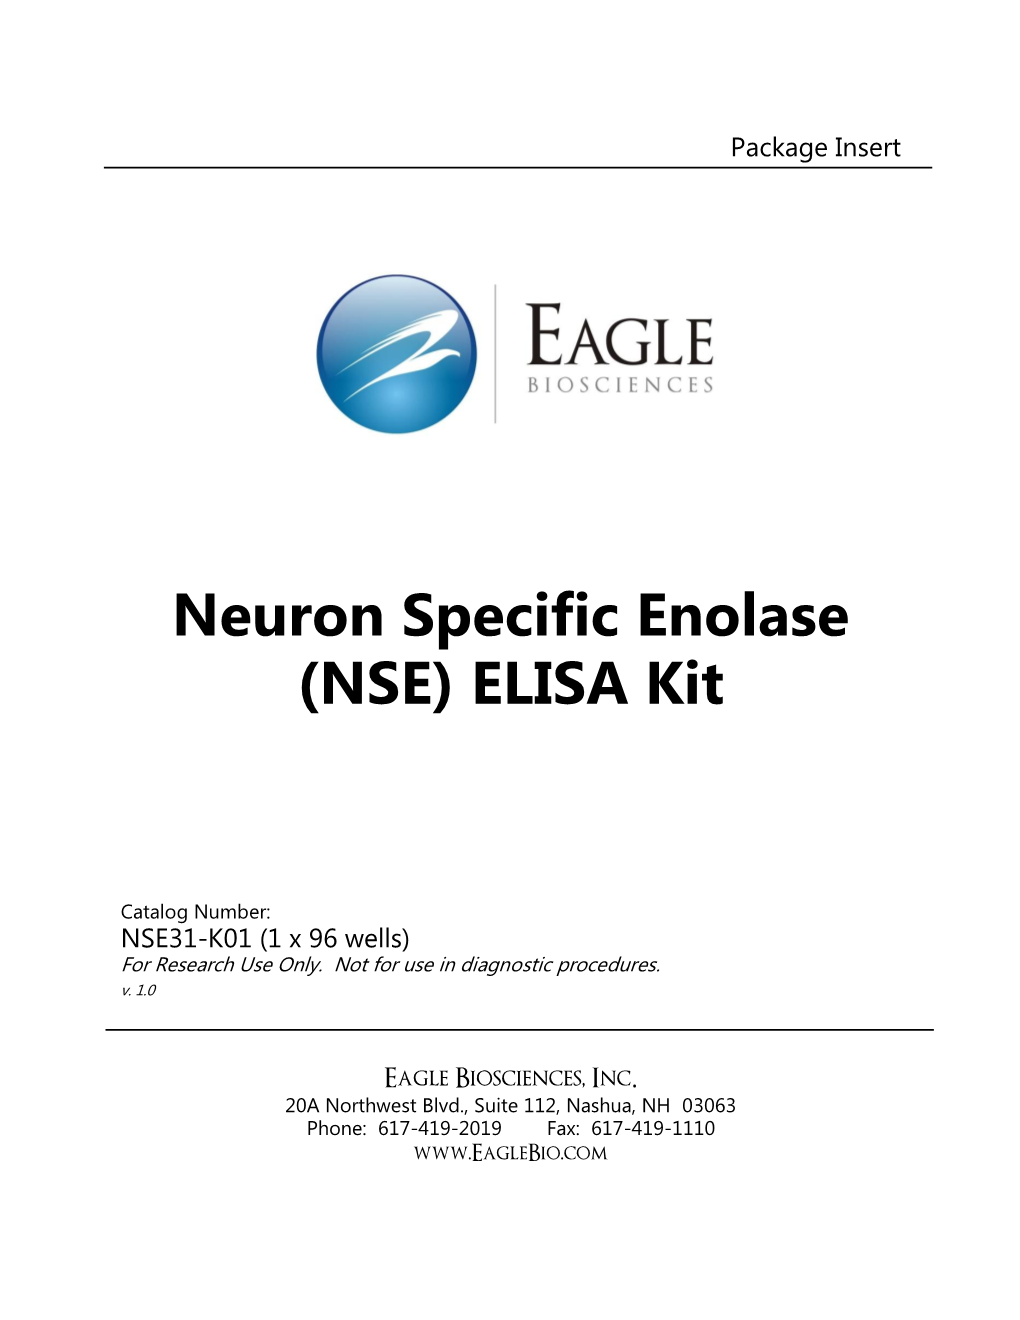 Neuron Specific Enolase (NSE) ELISA Kit